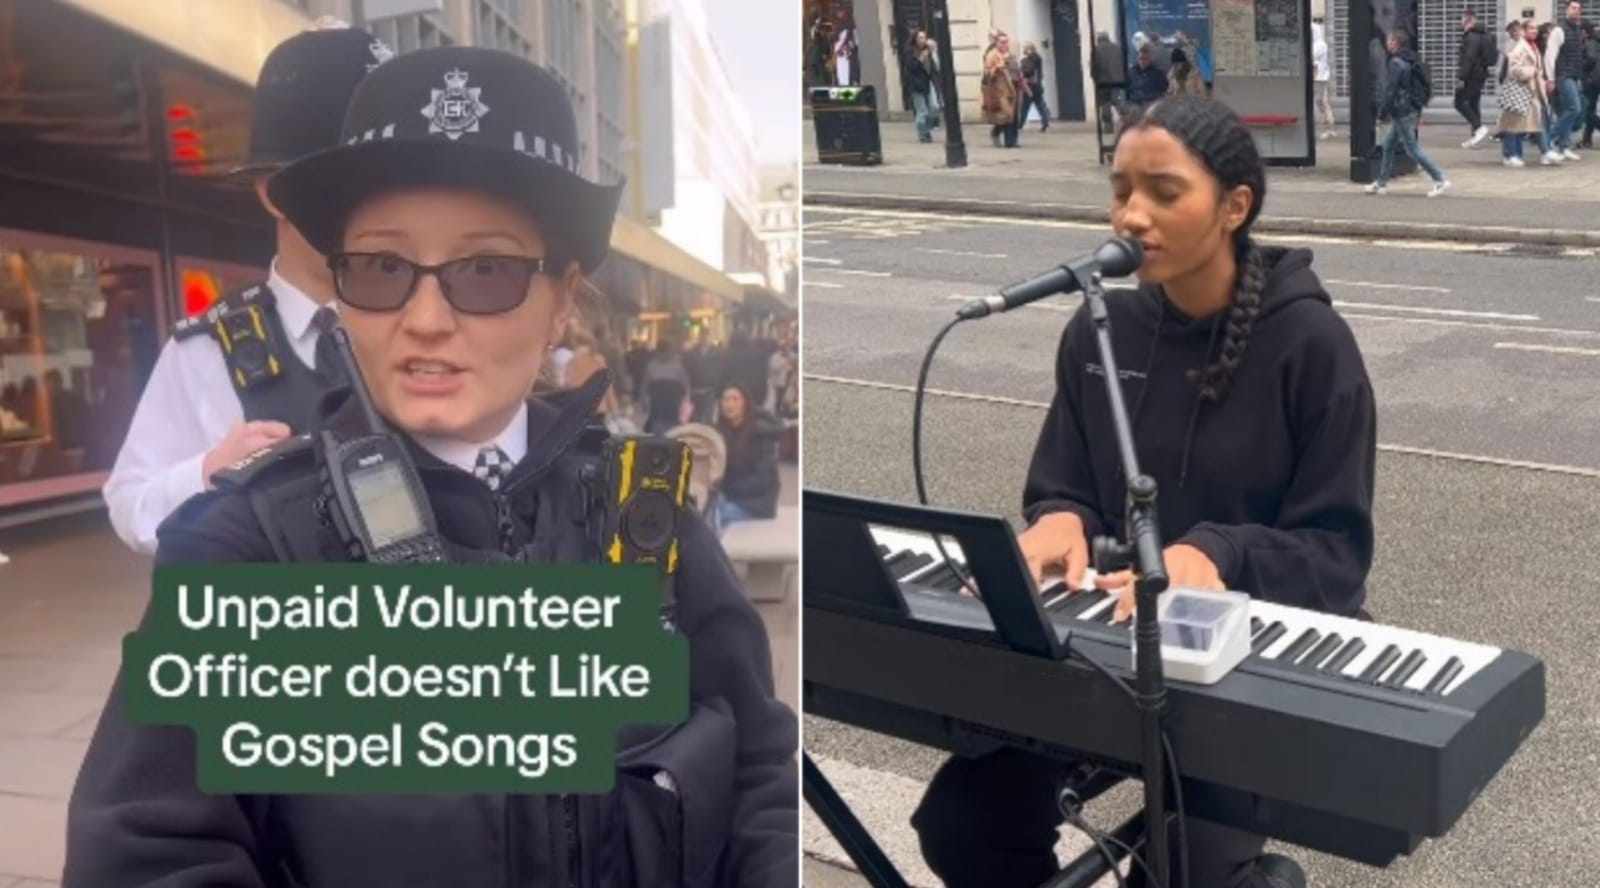 Policial aborda cristã por cantar louvores na rua, em Londres